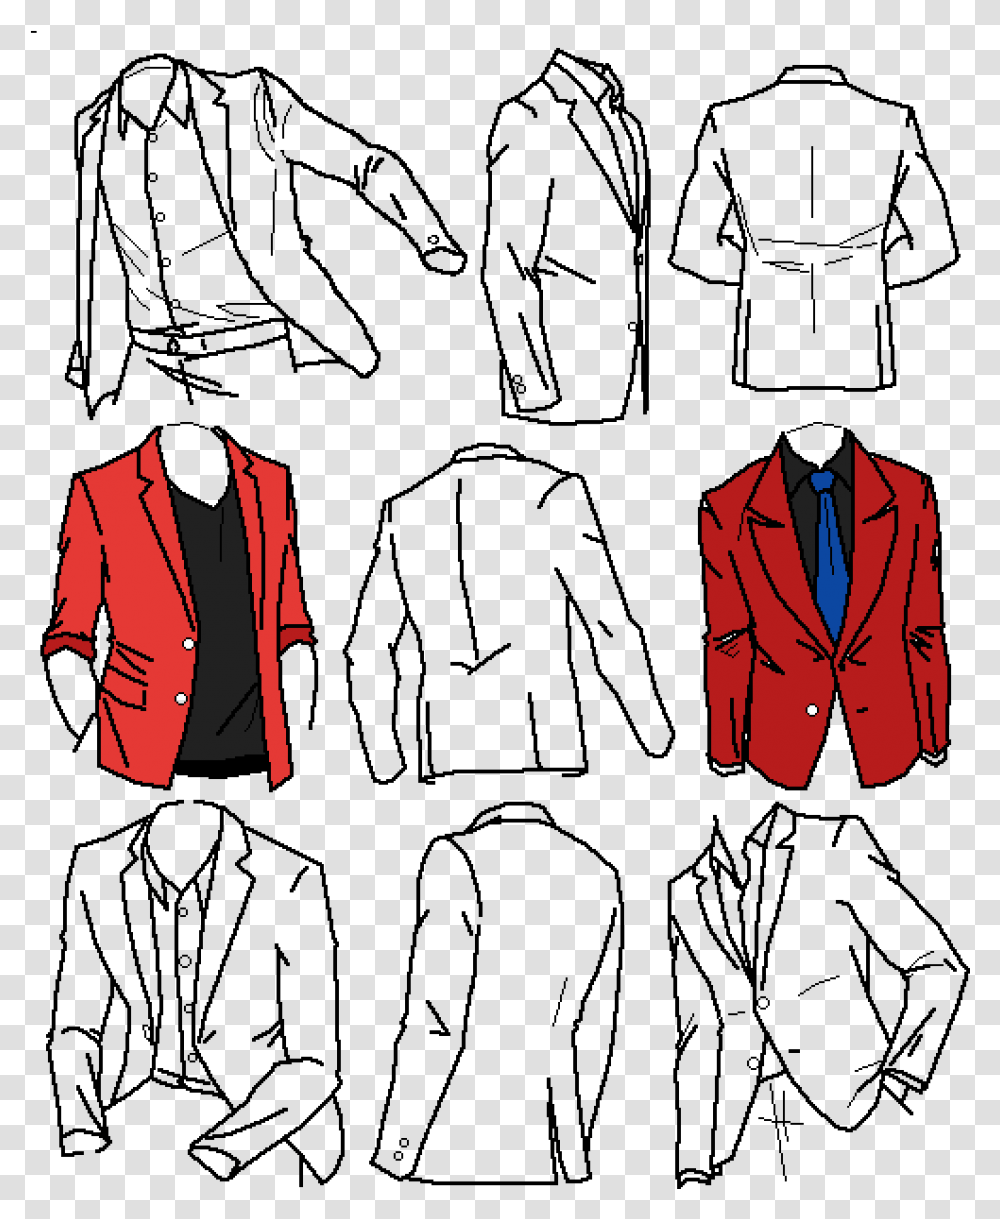 Tuxedo, Apparel, Coat, Suit Transparent Png